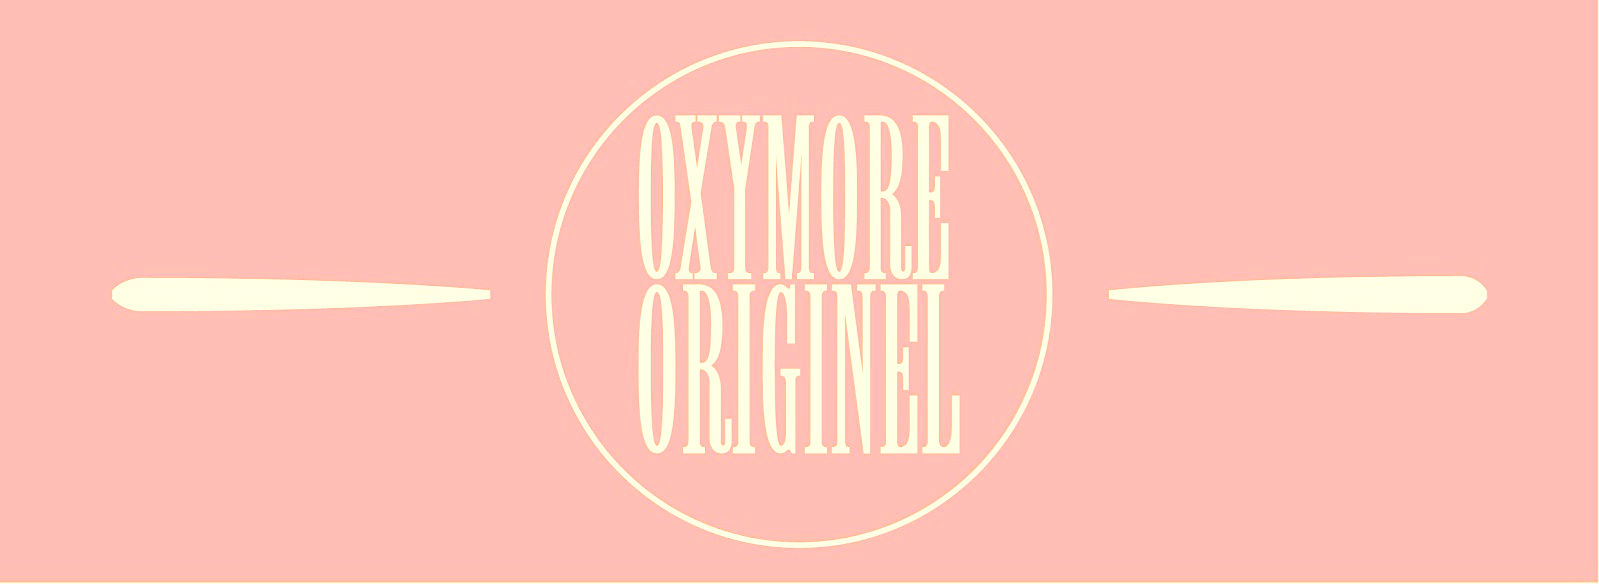 Oxymore Originel